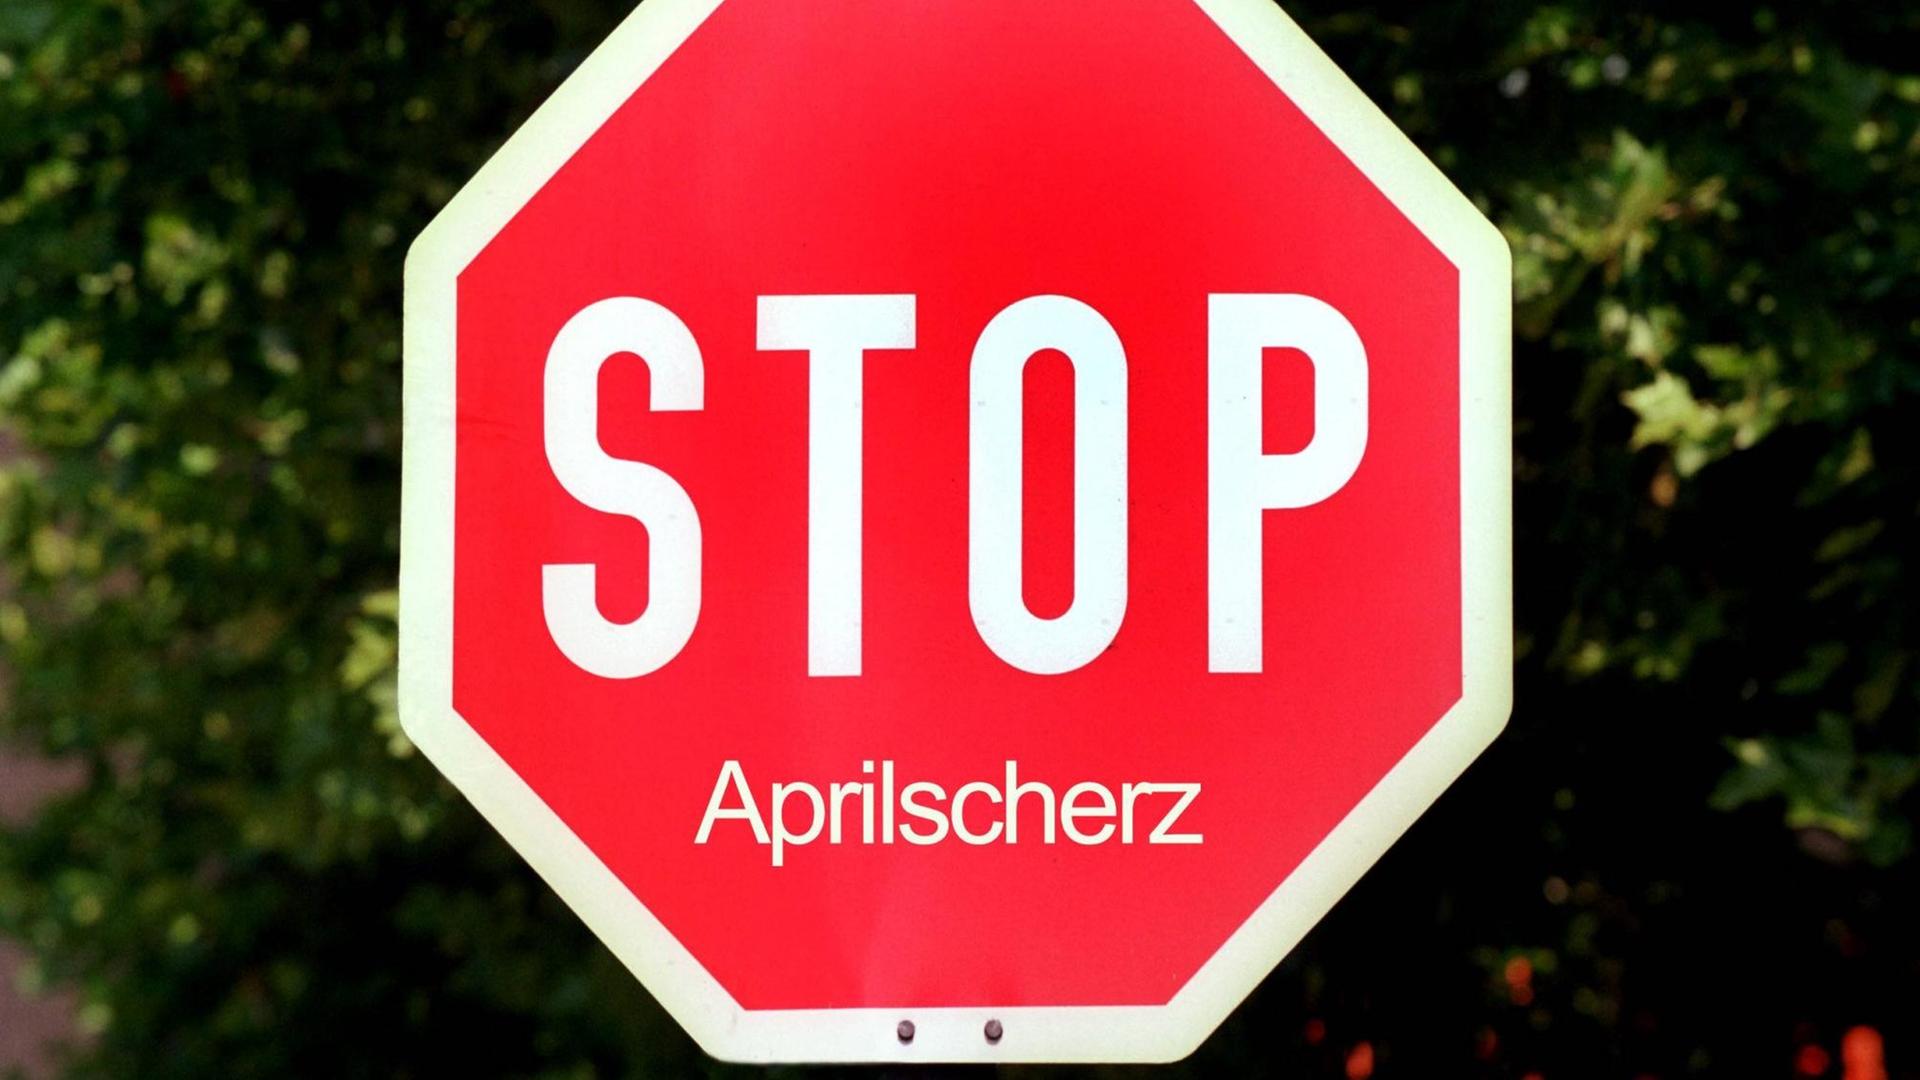 Ein Straßenschild zeigt "Stop Aprilscherz"